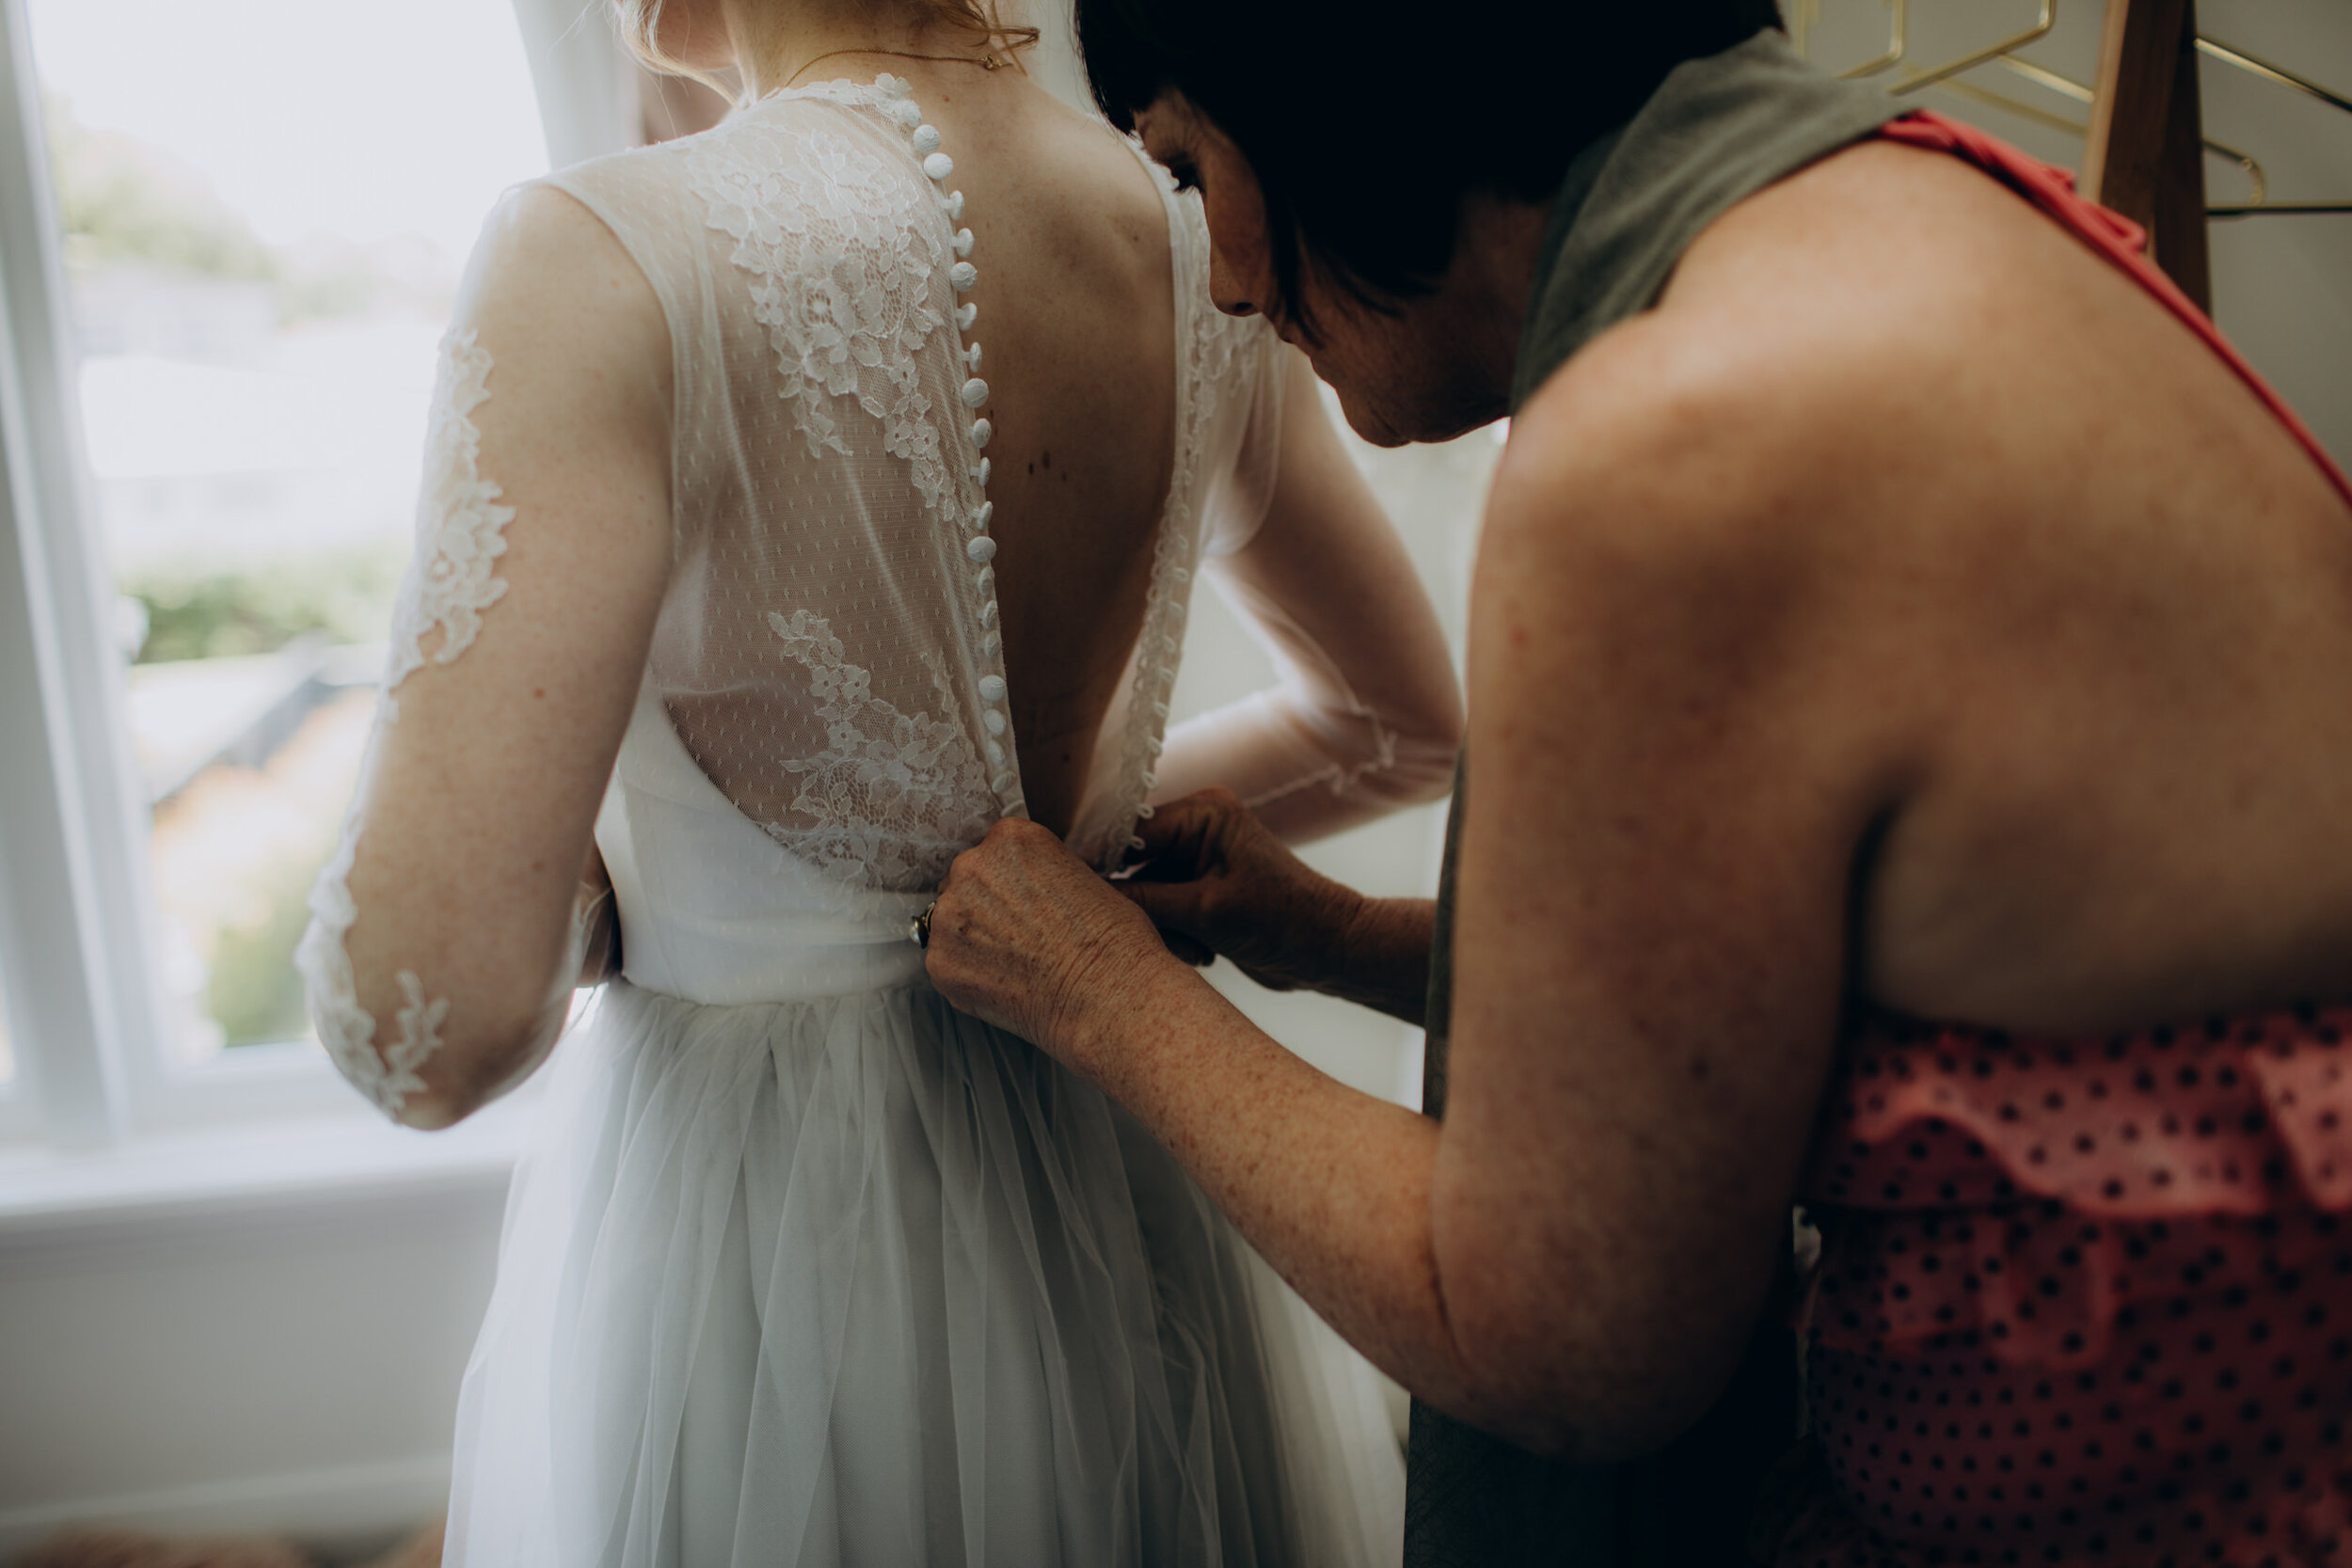 Zealand wedding photographer | Small intimate wedding 